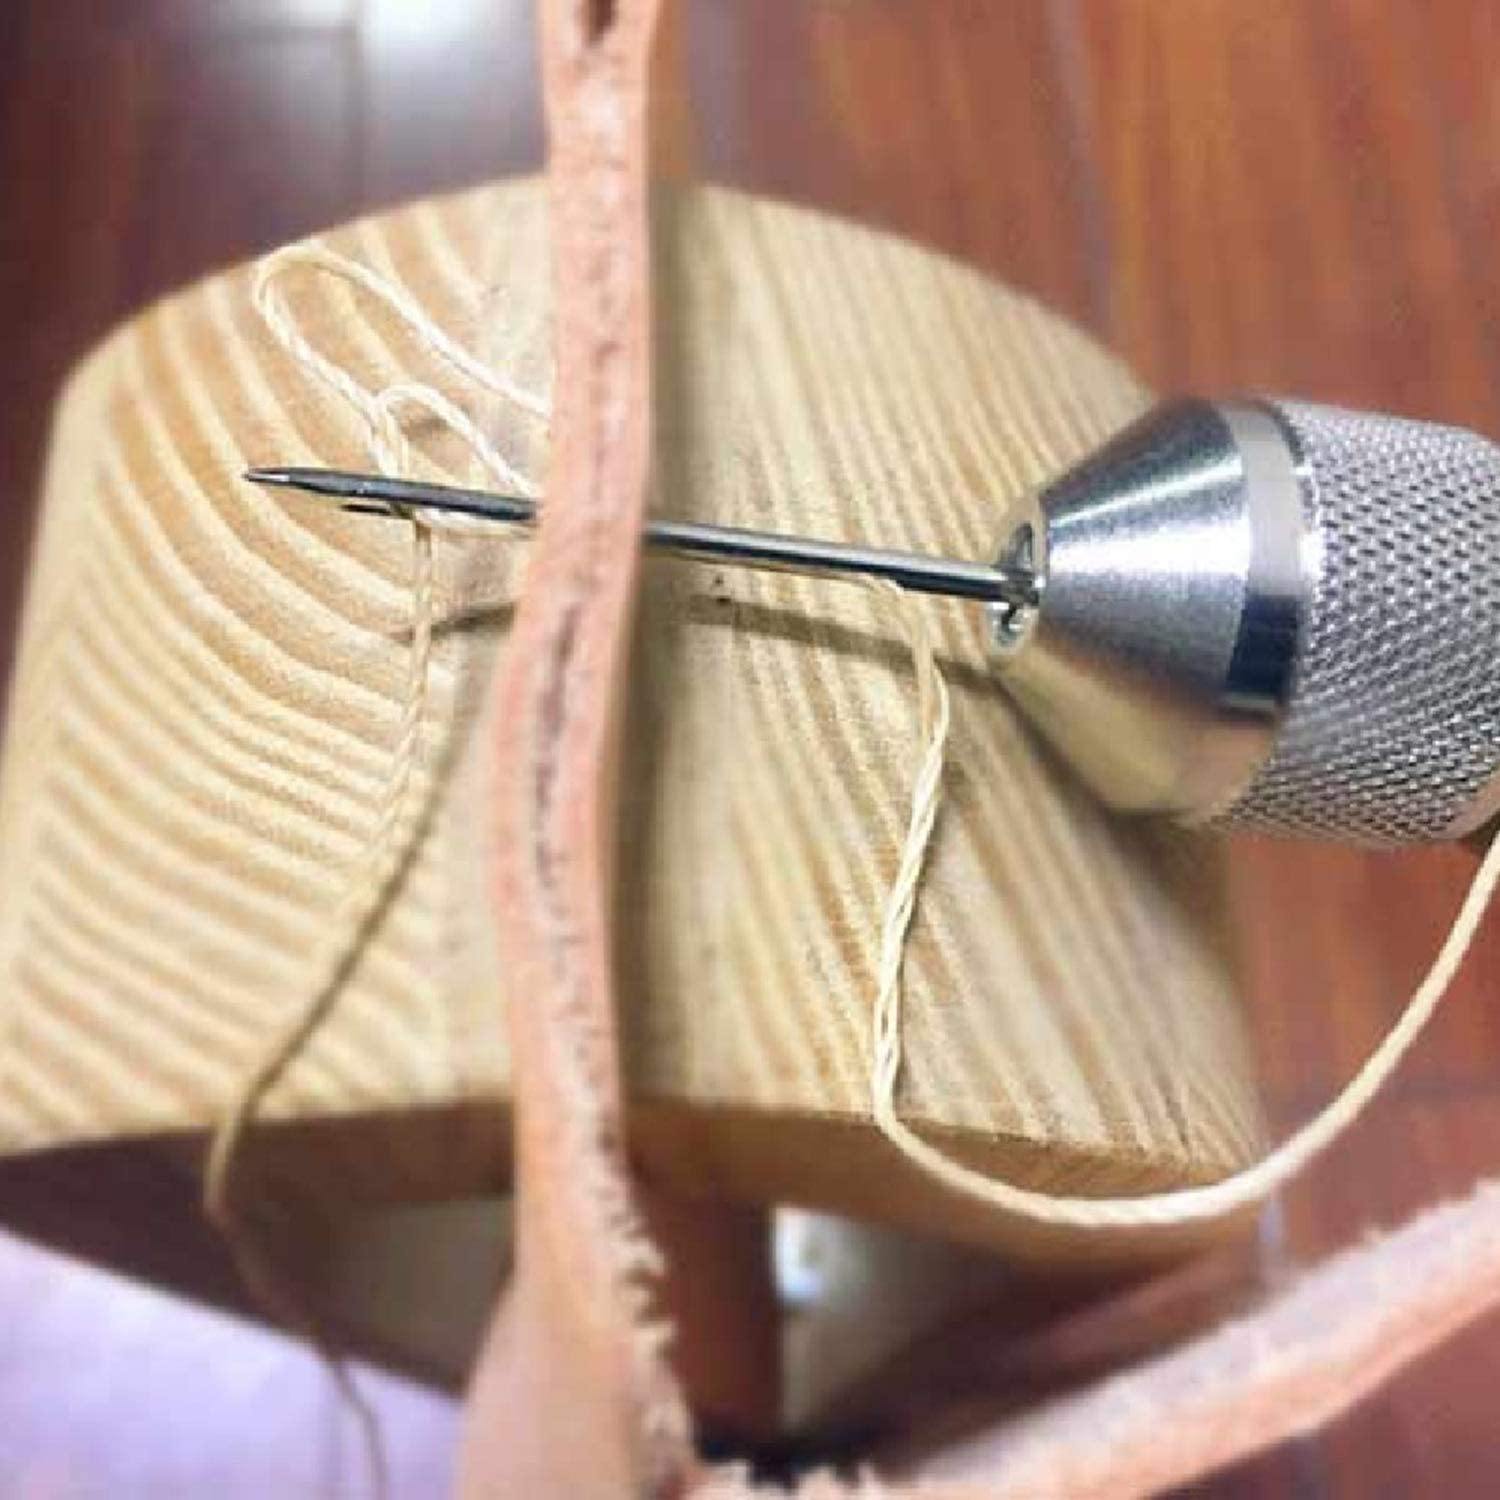 Speedy Stitcher Sewing Awl with 30 Yard Thread